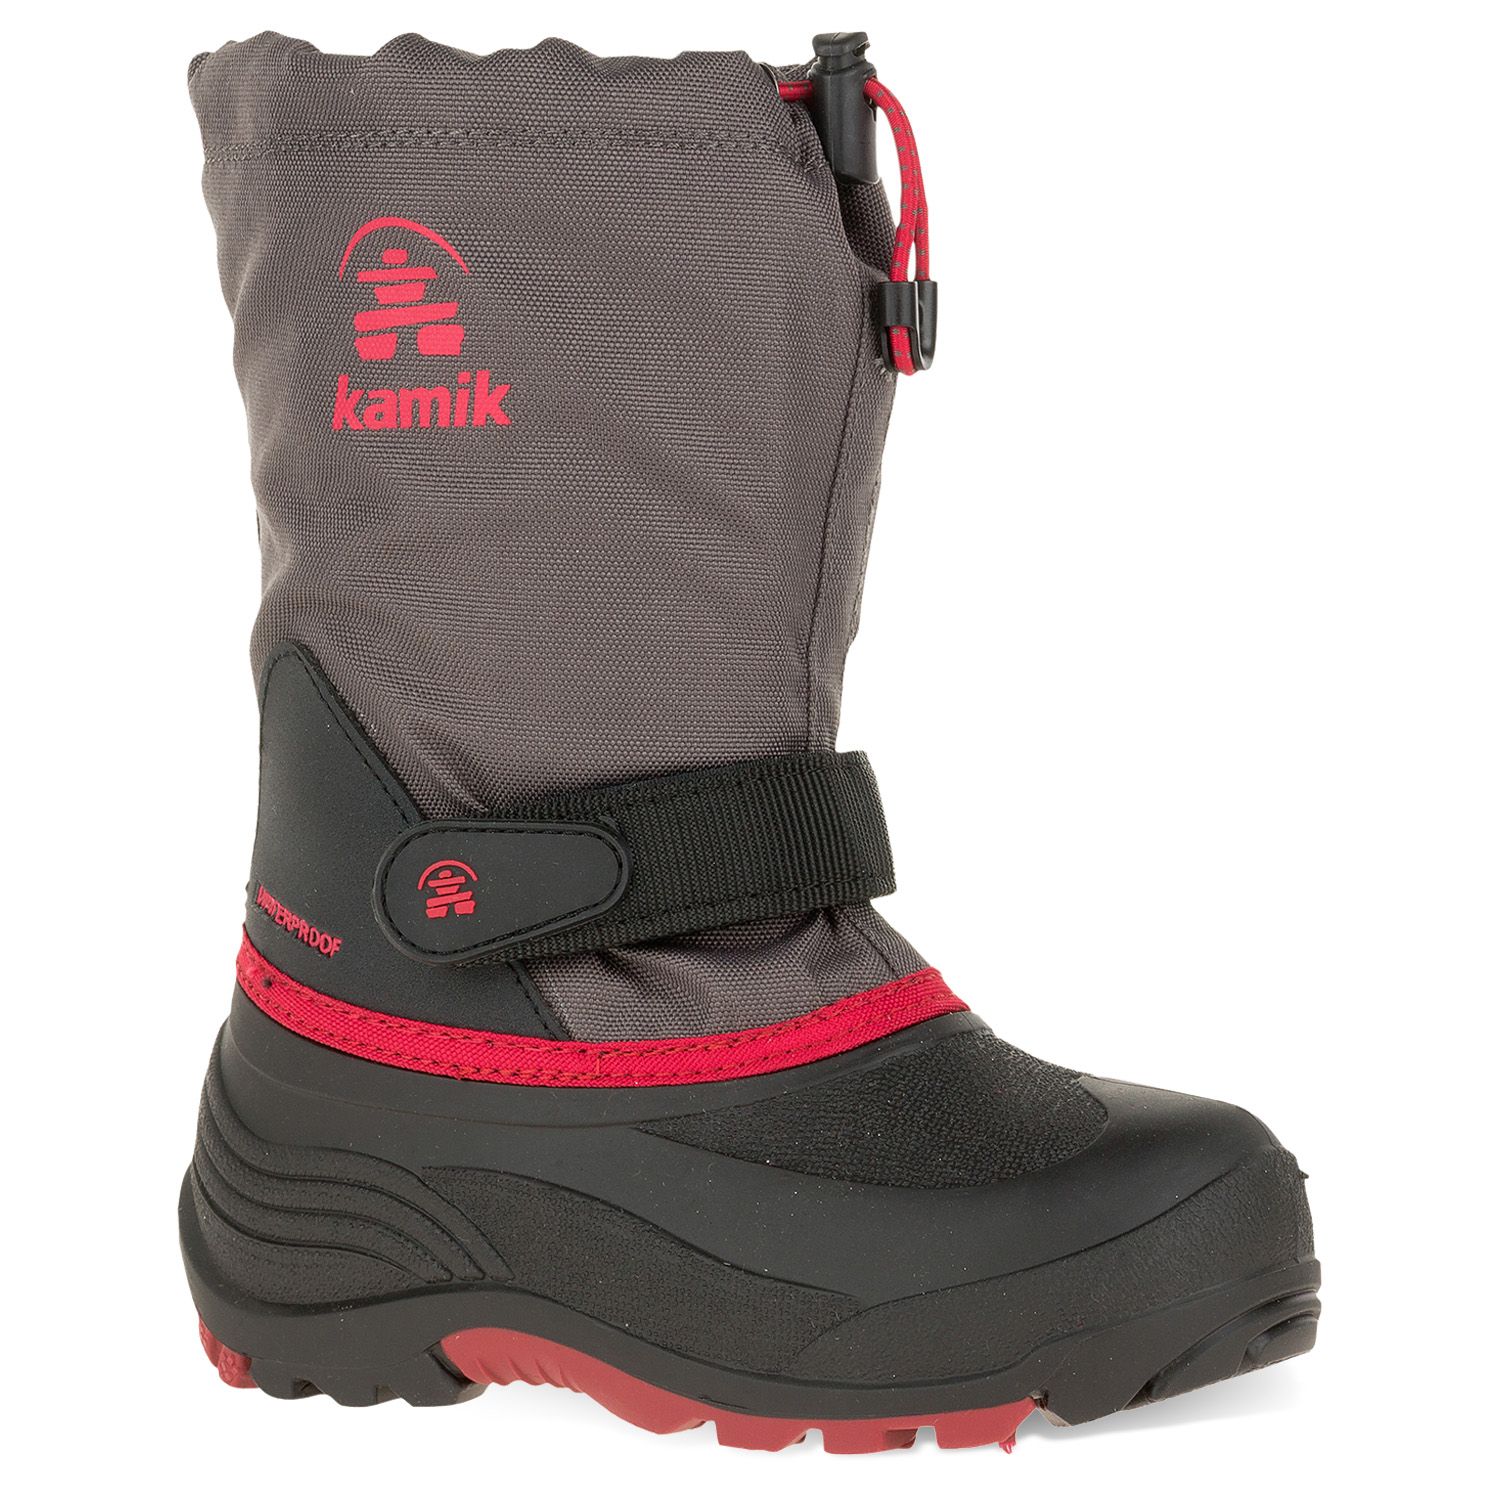 waterproof winter snow boots